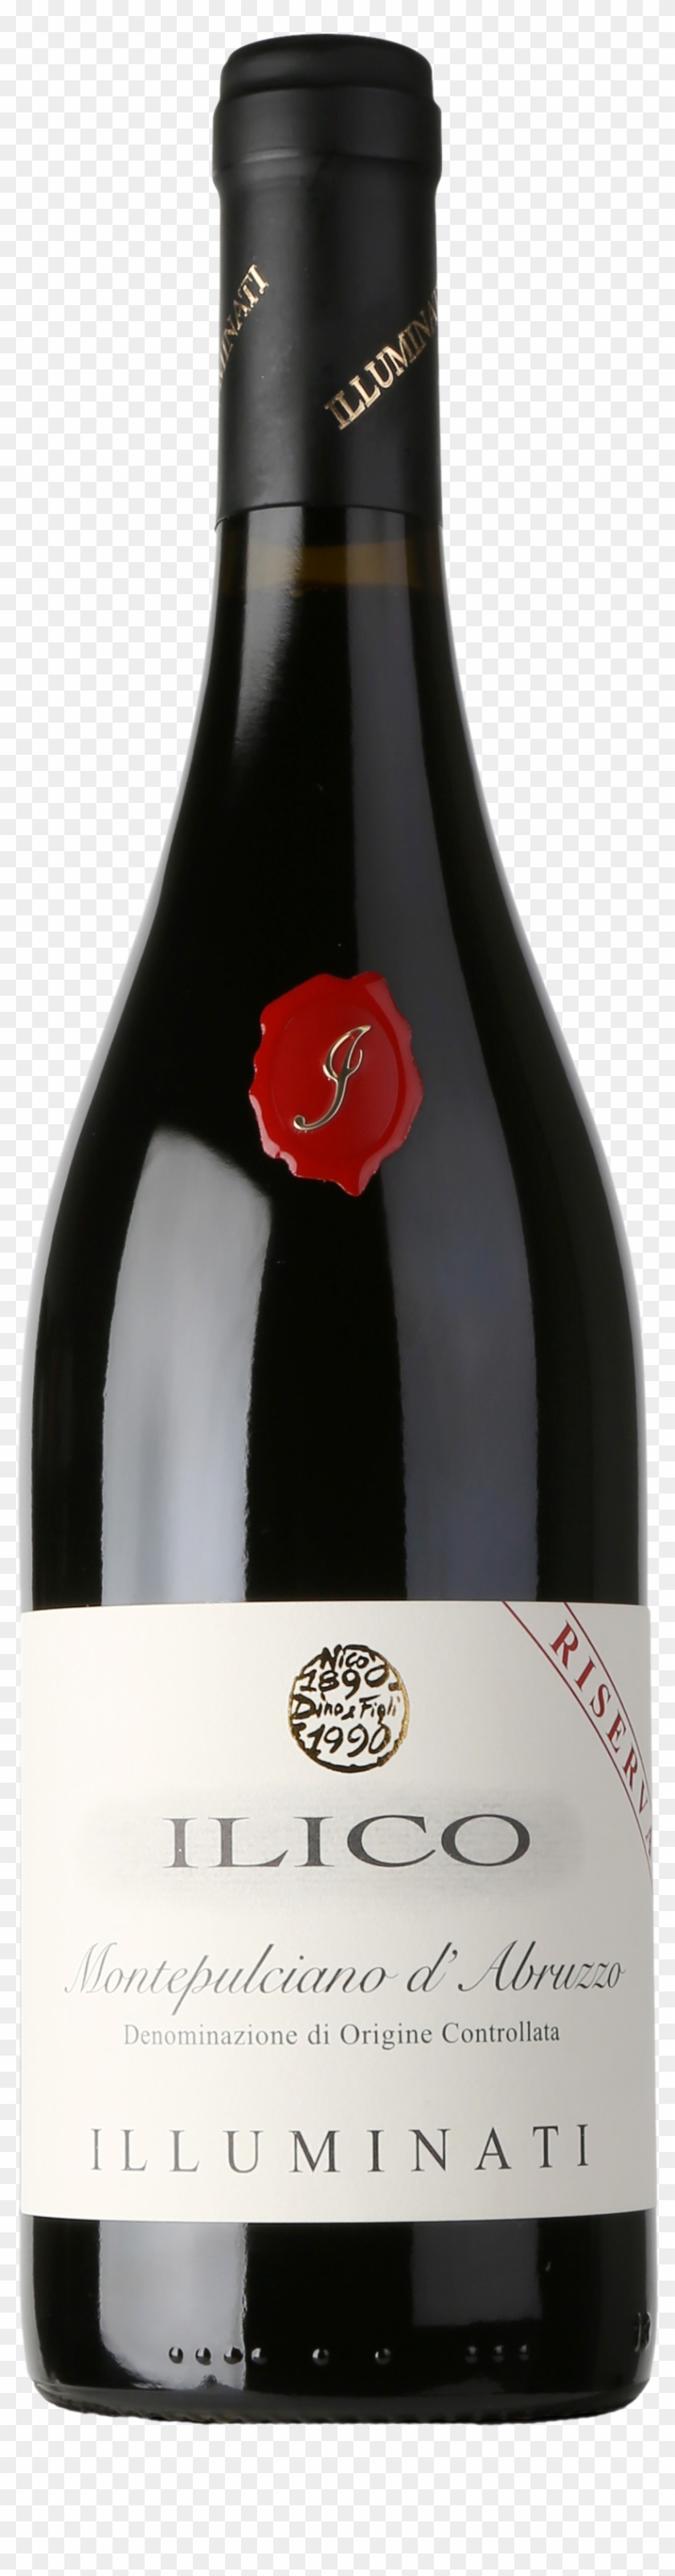 Montepulciano D'abruzzo Doc Riserva 'ilico' - Martin Ray Sonoma County Pinot Noir Clipart #562296